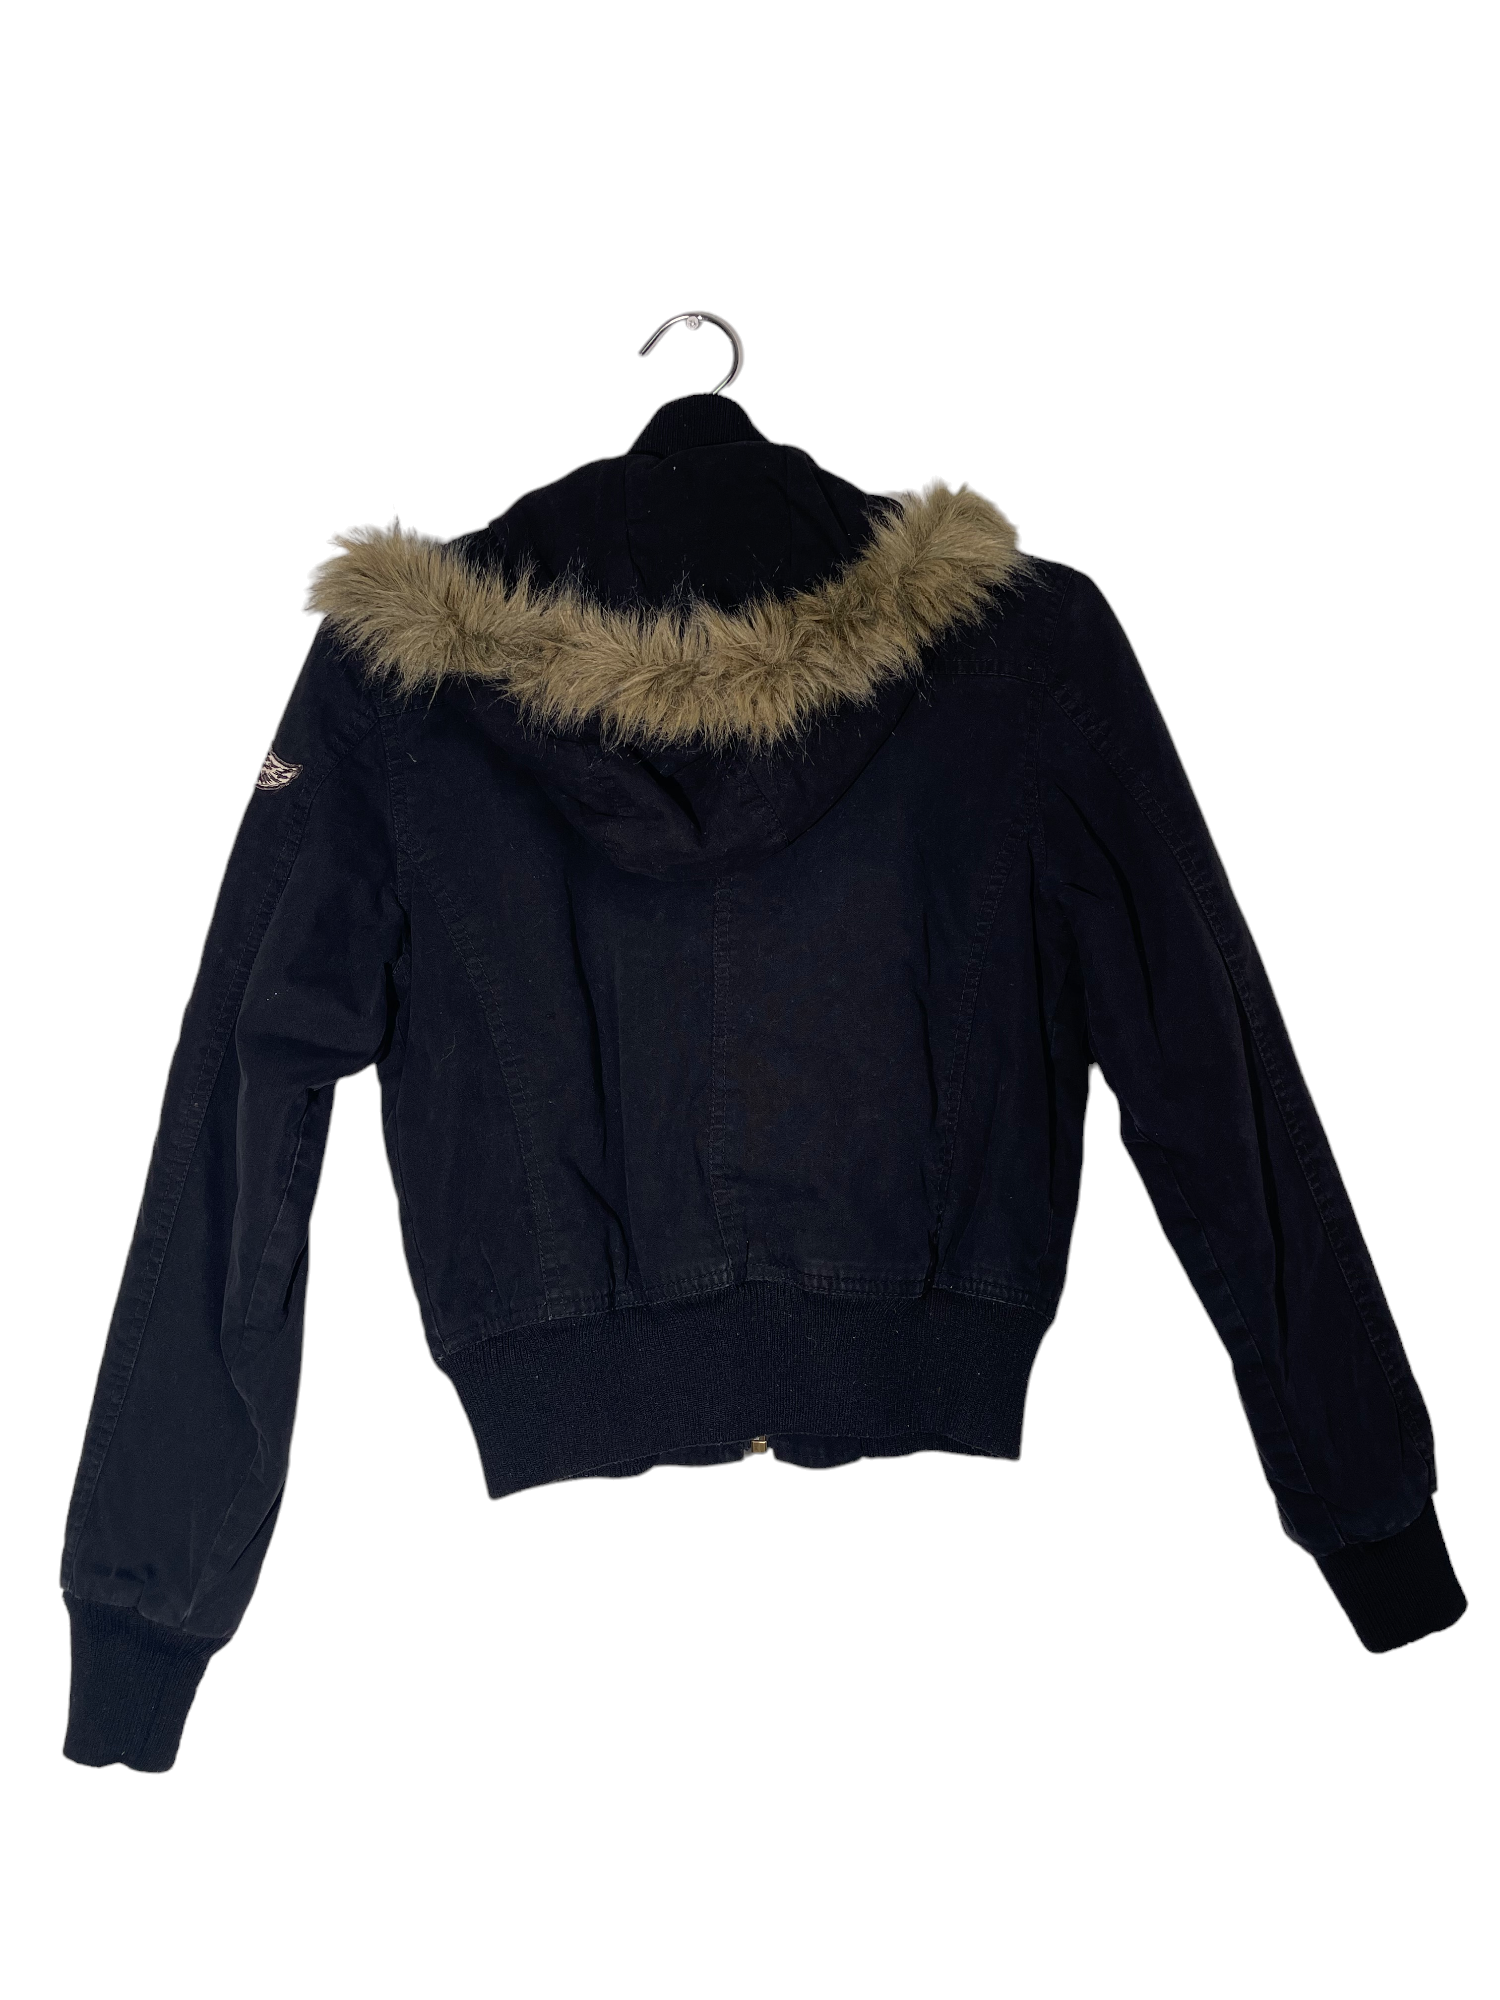 Black Patchwork Jacket with Fur Trim Hoodie